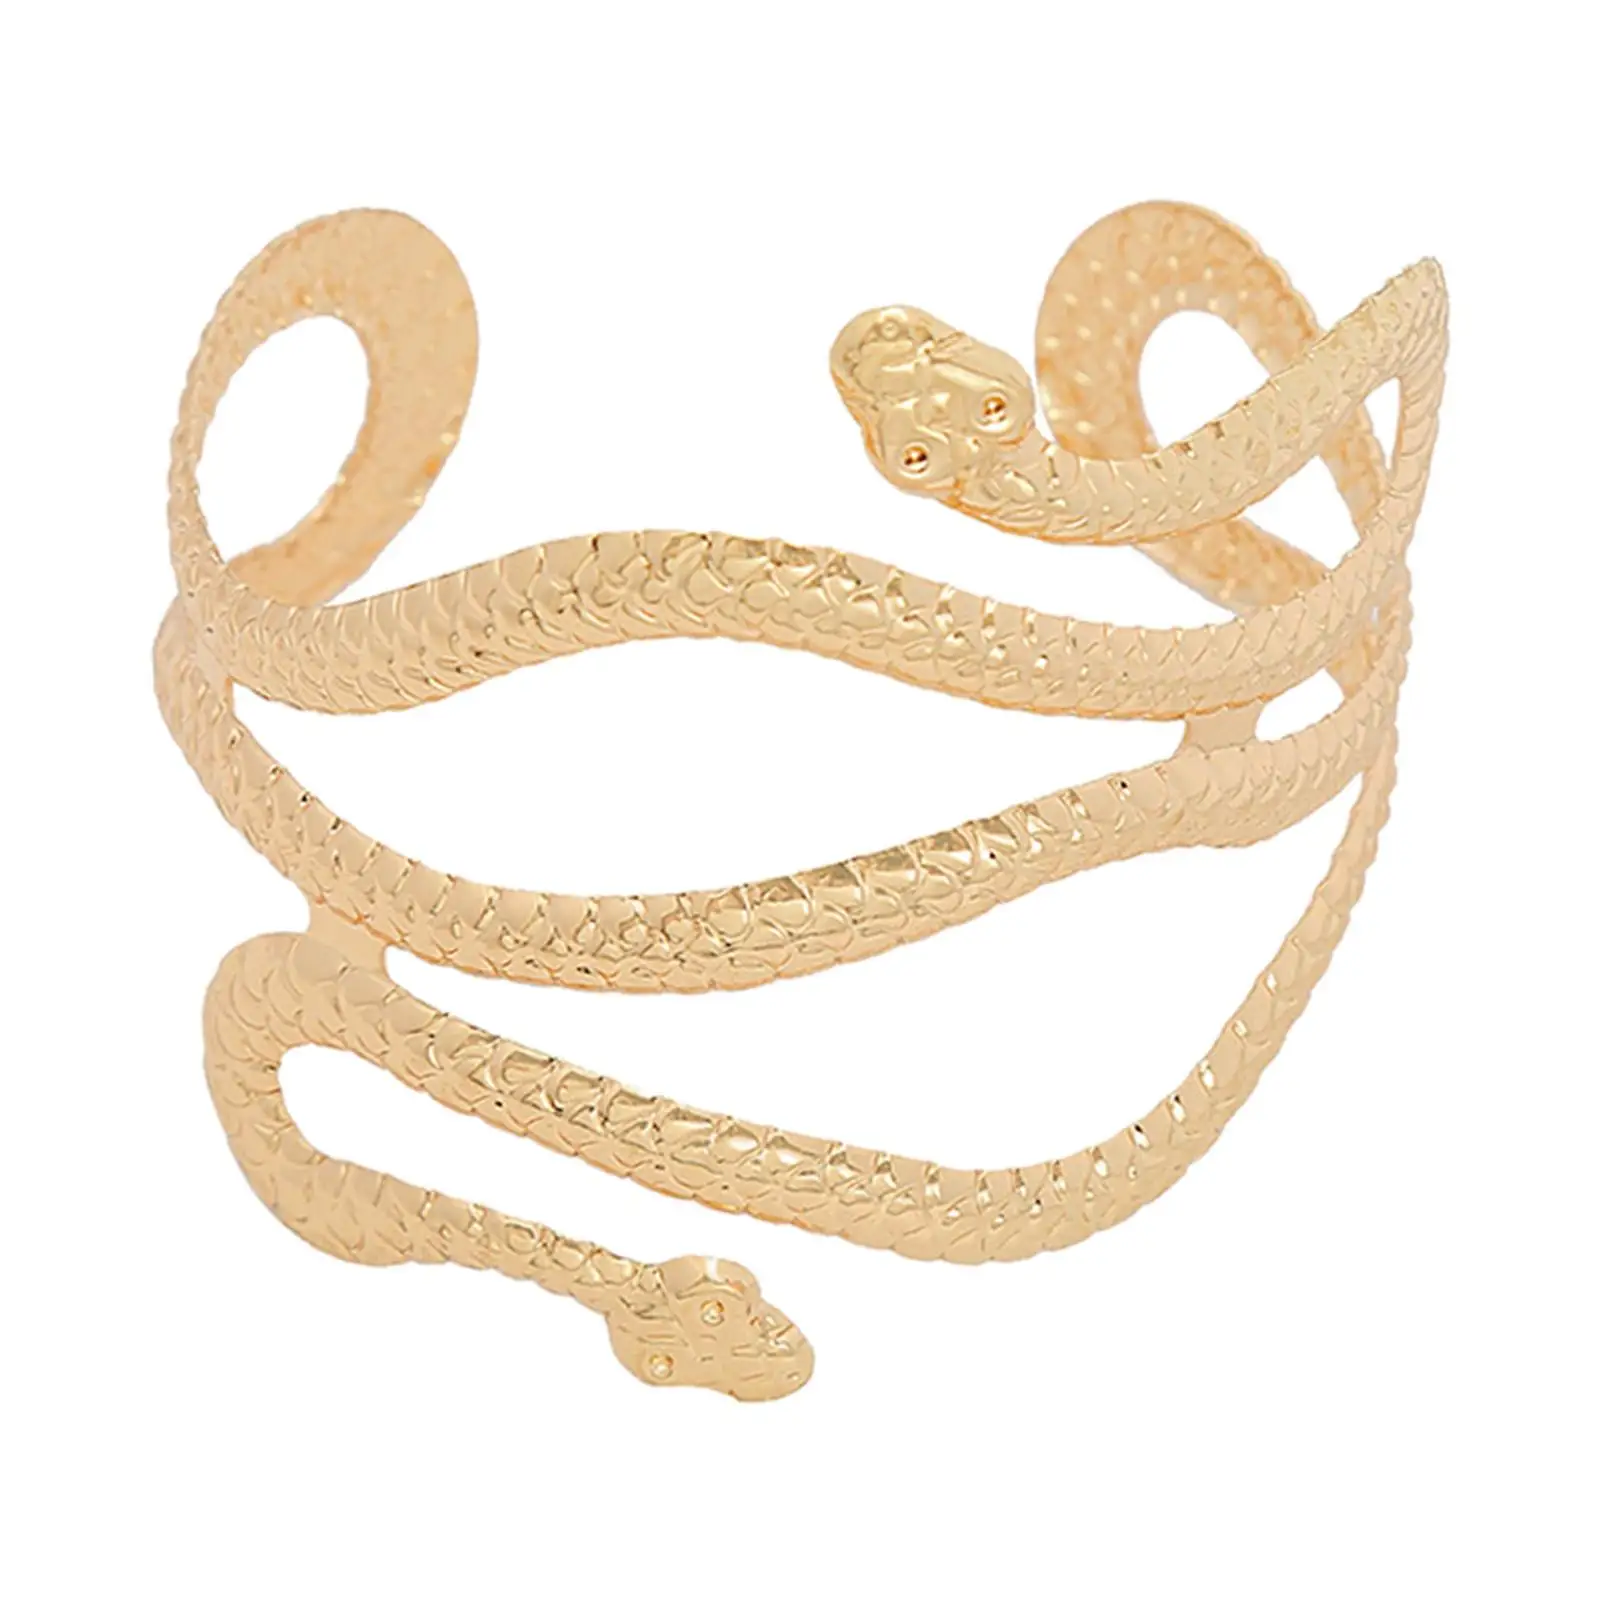 Upper Arm Cuff, Swirl Snake Wrap Chic Armband Jewelry Bracelet for Wedding Girls Women